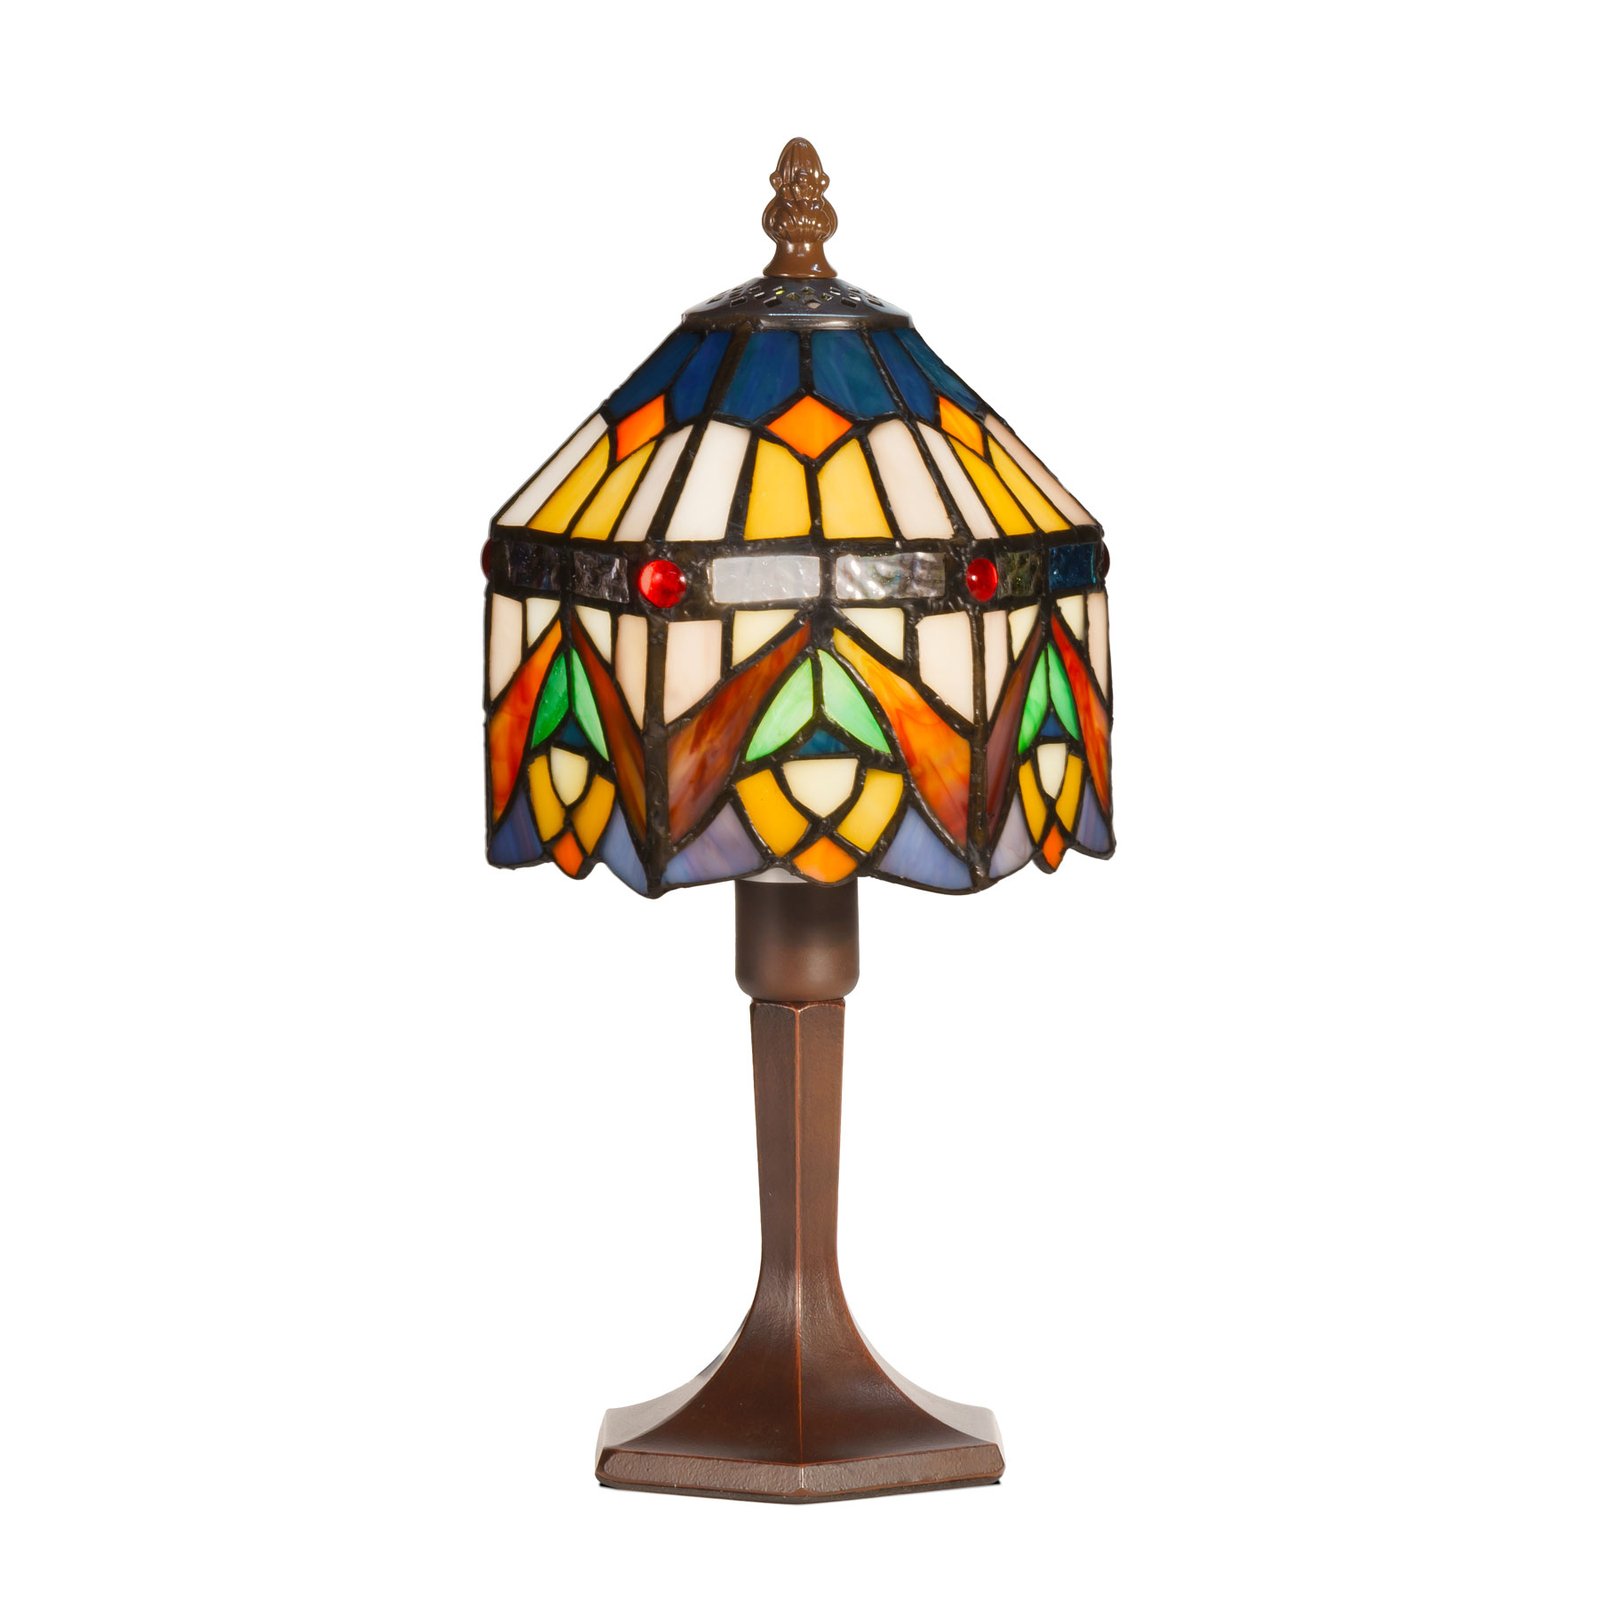 Jamilia dekorativ bordlampe i Tiffany stil